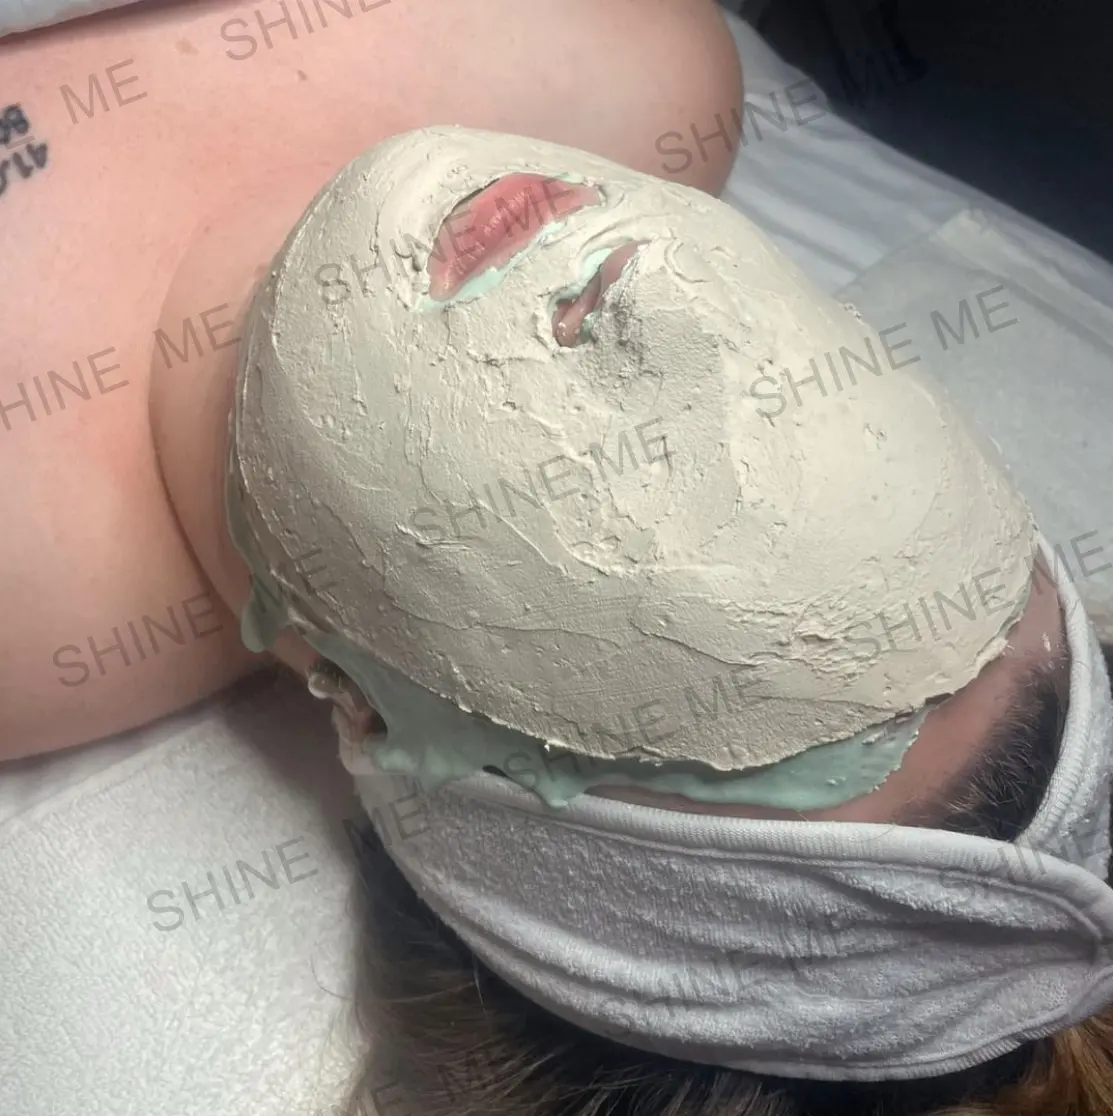 Oem Spa Professionele Behandeling Thermische Modellering Masker Poeder Peel Off Modder Masker Verwarming Gips Mummie Masker